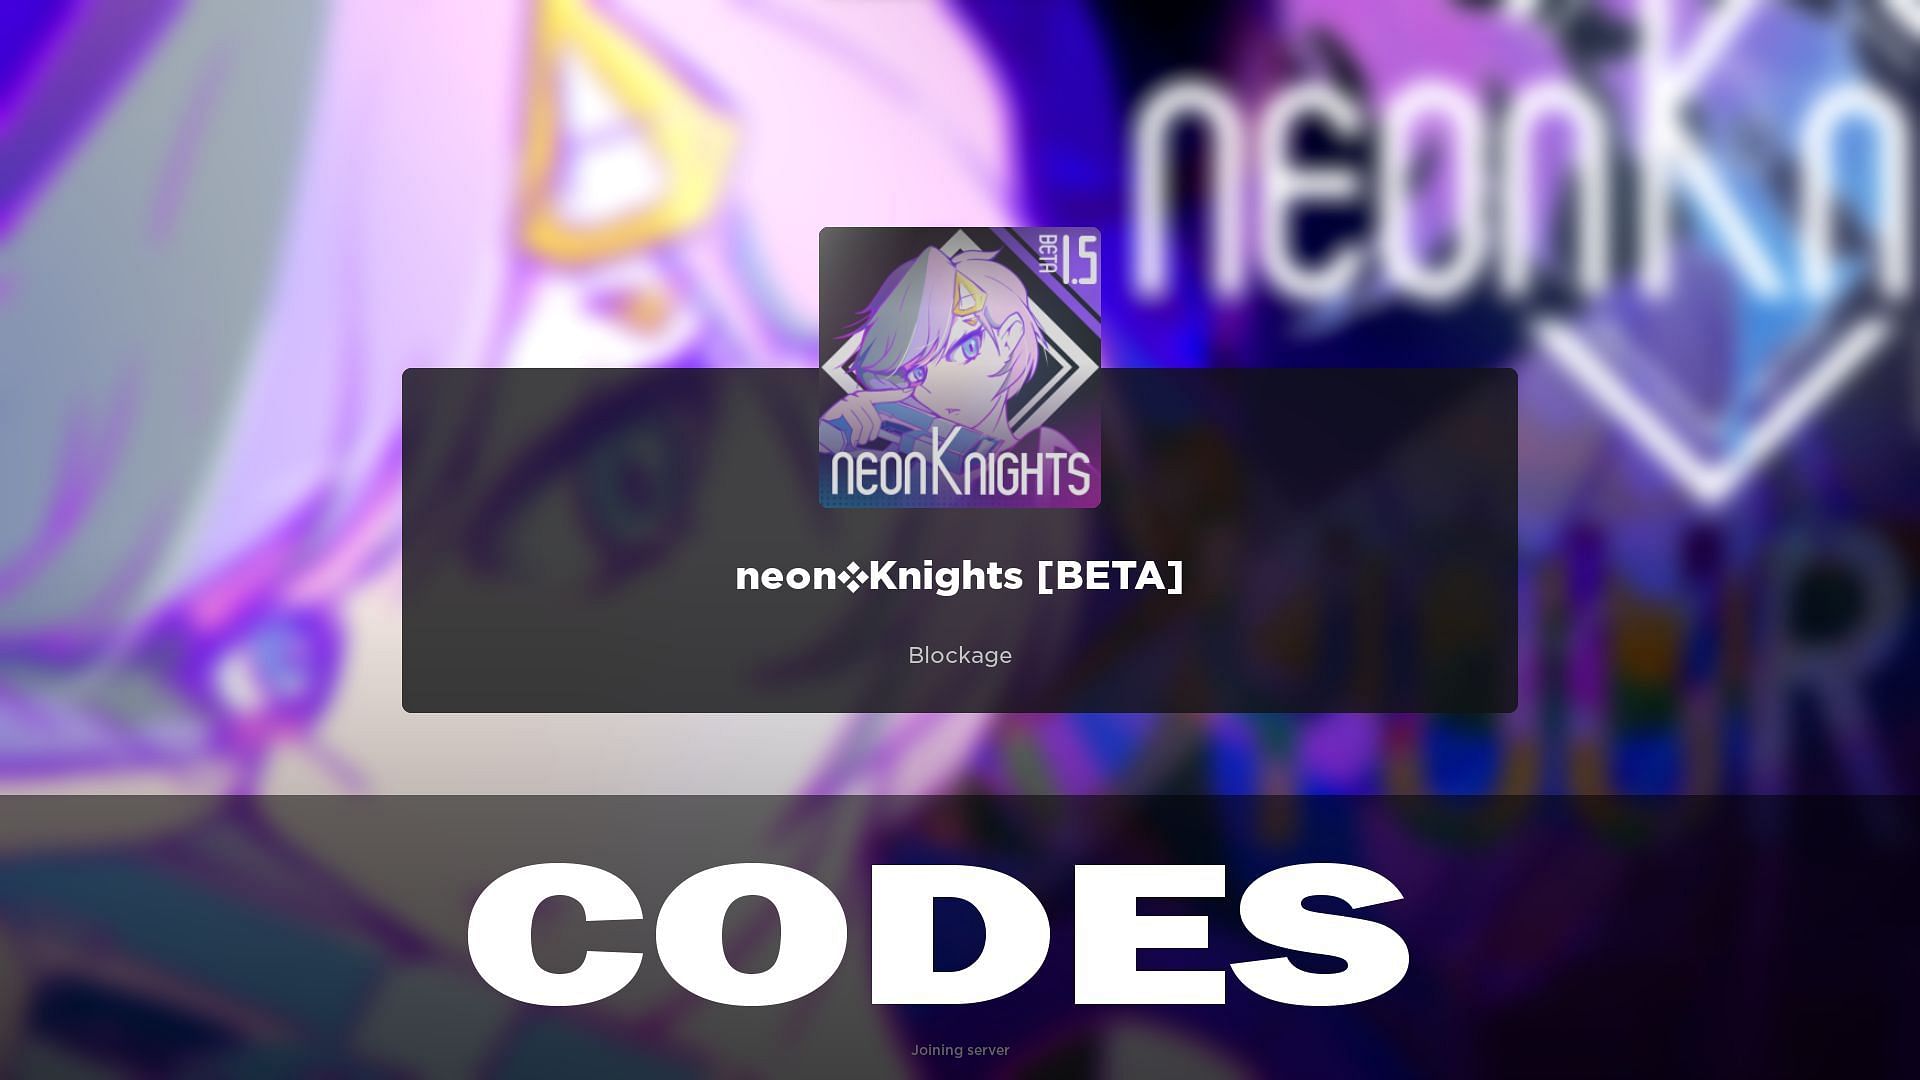 Neon Knights codes